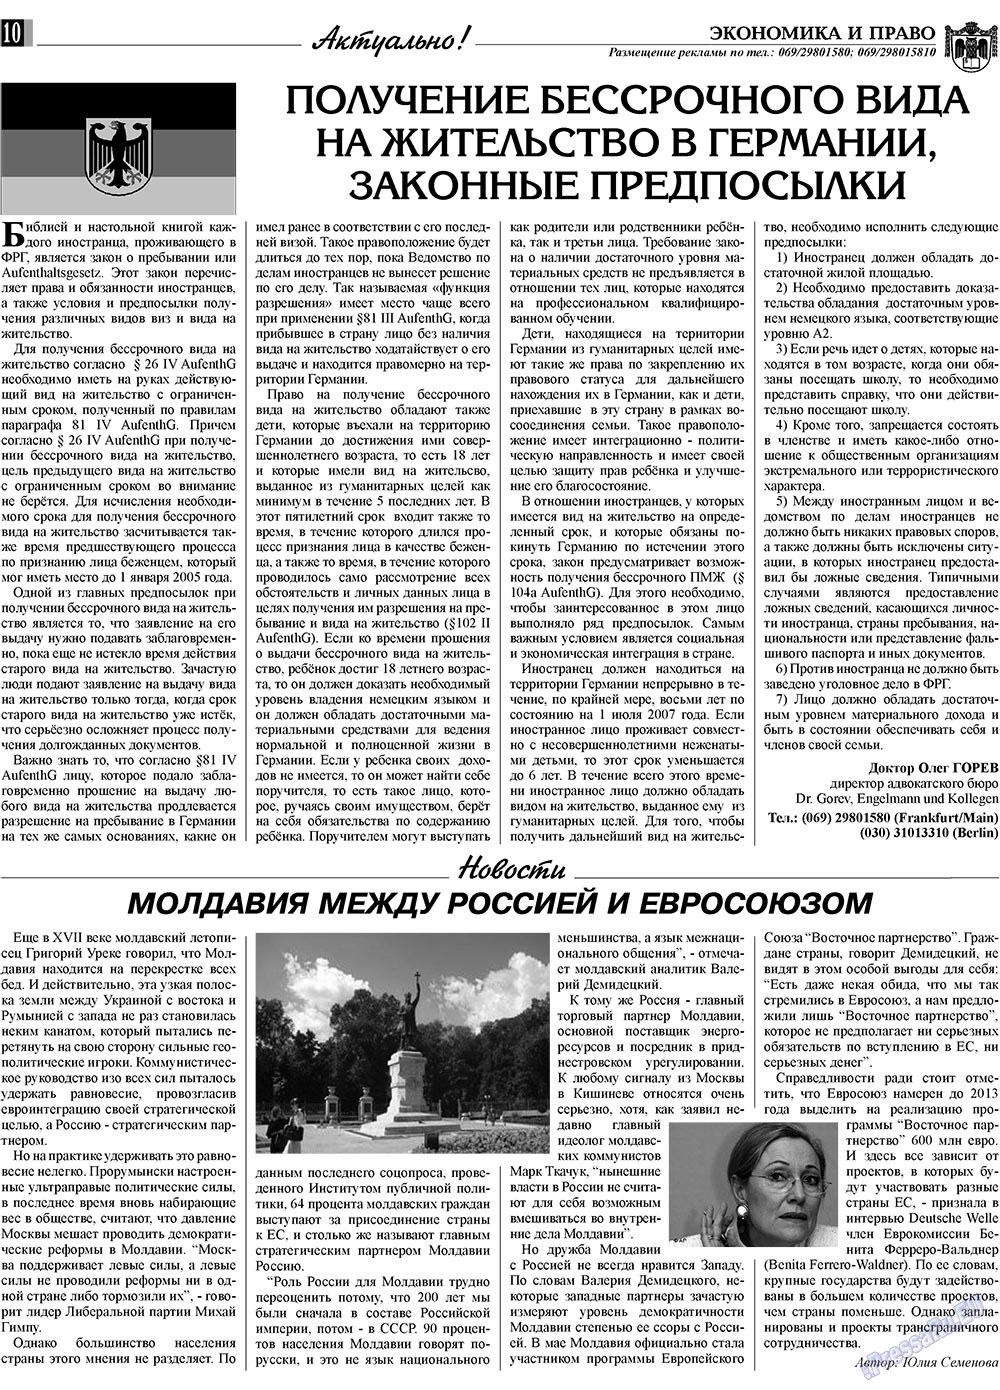 Экономика и право, газета. 2009 №7 стр.10